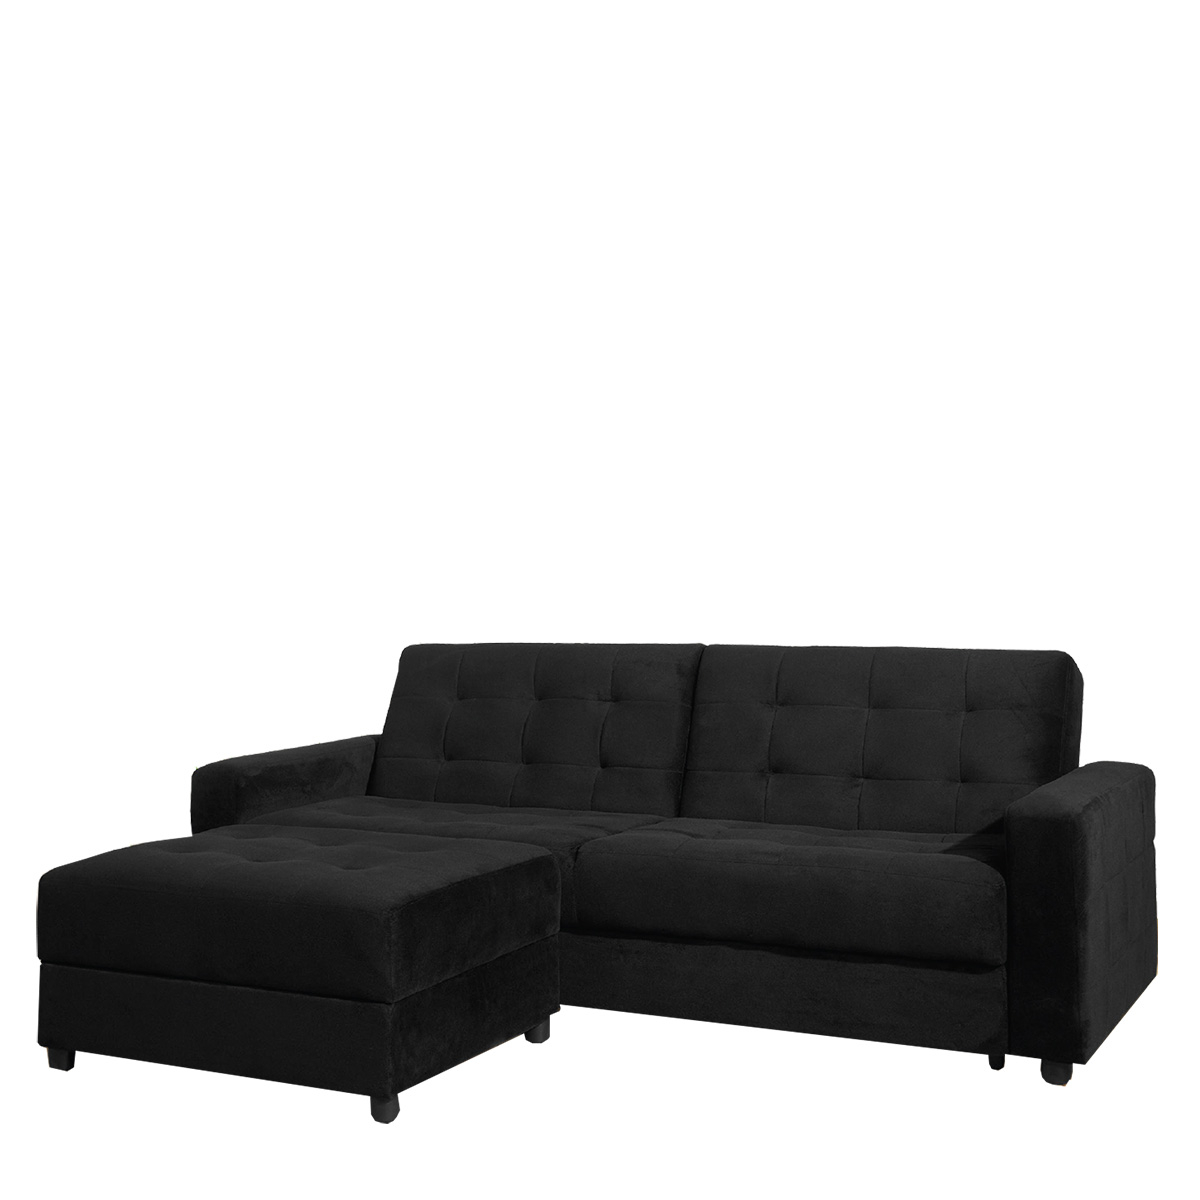 Καναπές-Κρεβάτι Τριθέσιος JACKSON + Σκαμπώ Ύφασμα Μαύρο 193x81x77cm